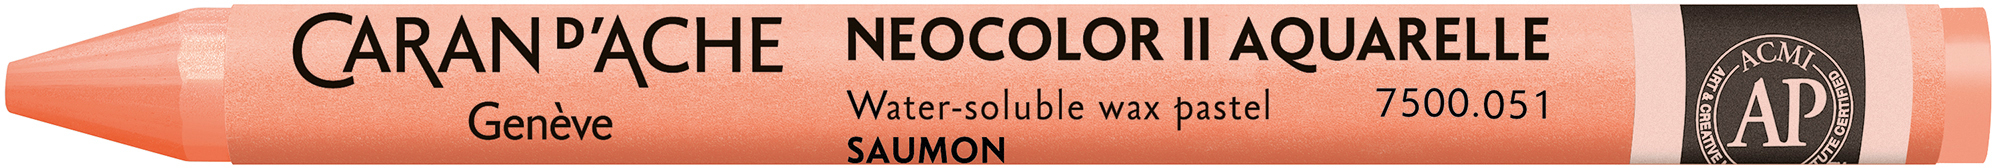 CARAN D'ACHE Crayons de cire Neocolor II 7500.051 saumon